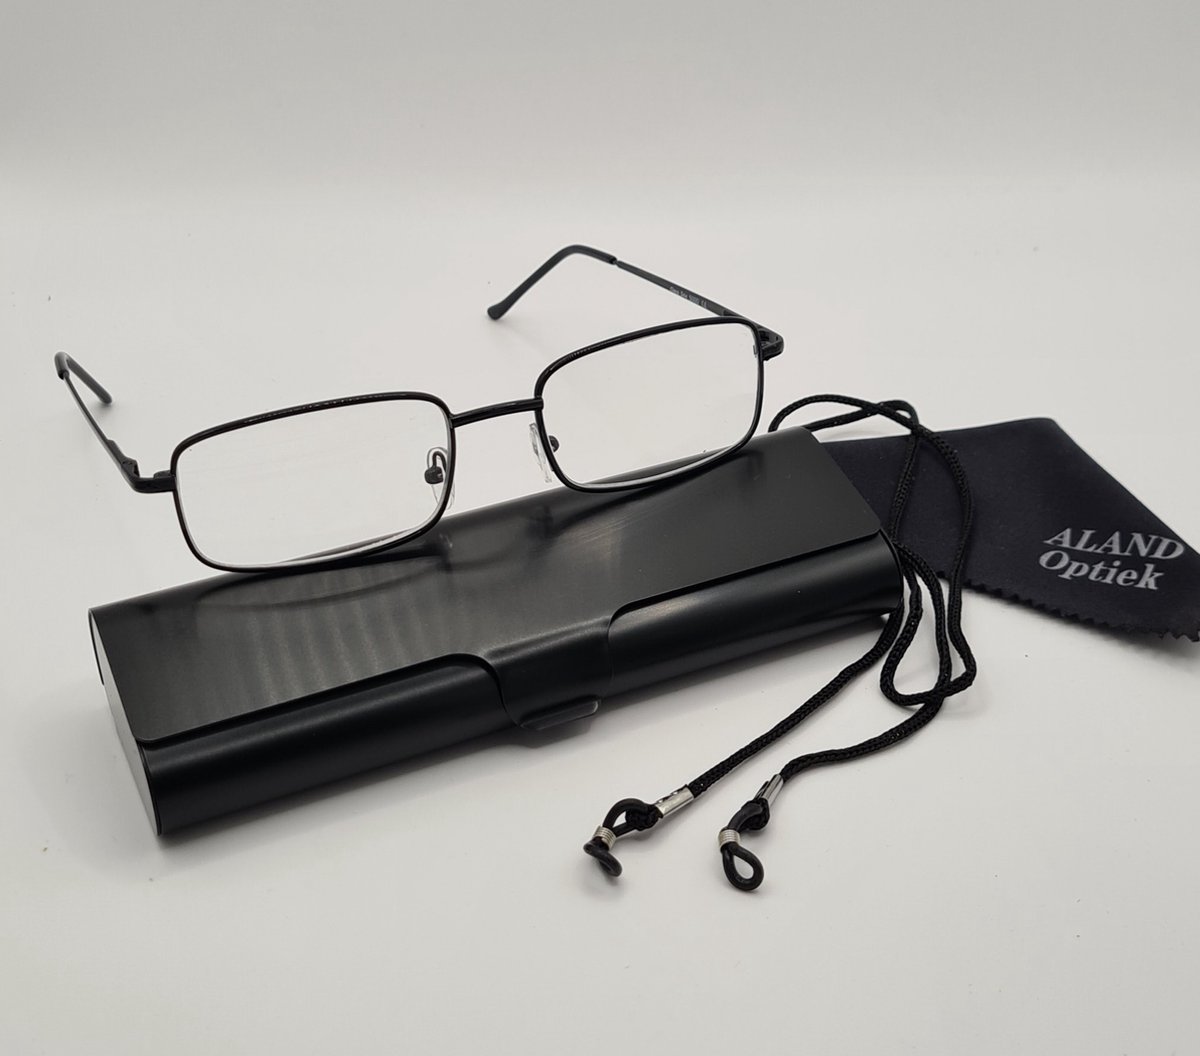 Unisex leesbril +1,0 met brillenkoker + koord + microvezeldoekje / class one 5000 / zwart / +1.0 lunettes de lecture avec étui pratique, cordon et chiffon de nettoyage pour lentilles / Aland optiek